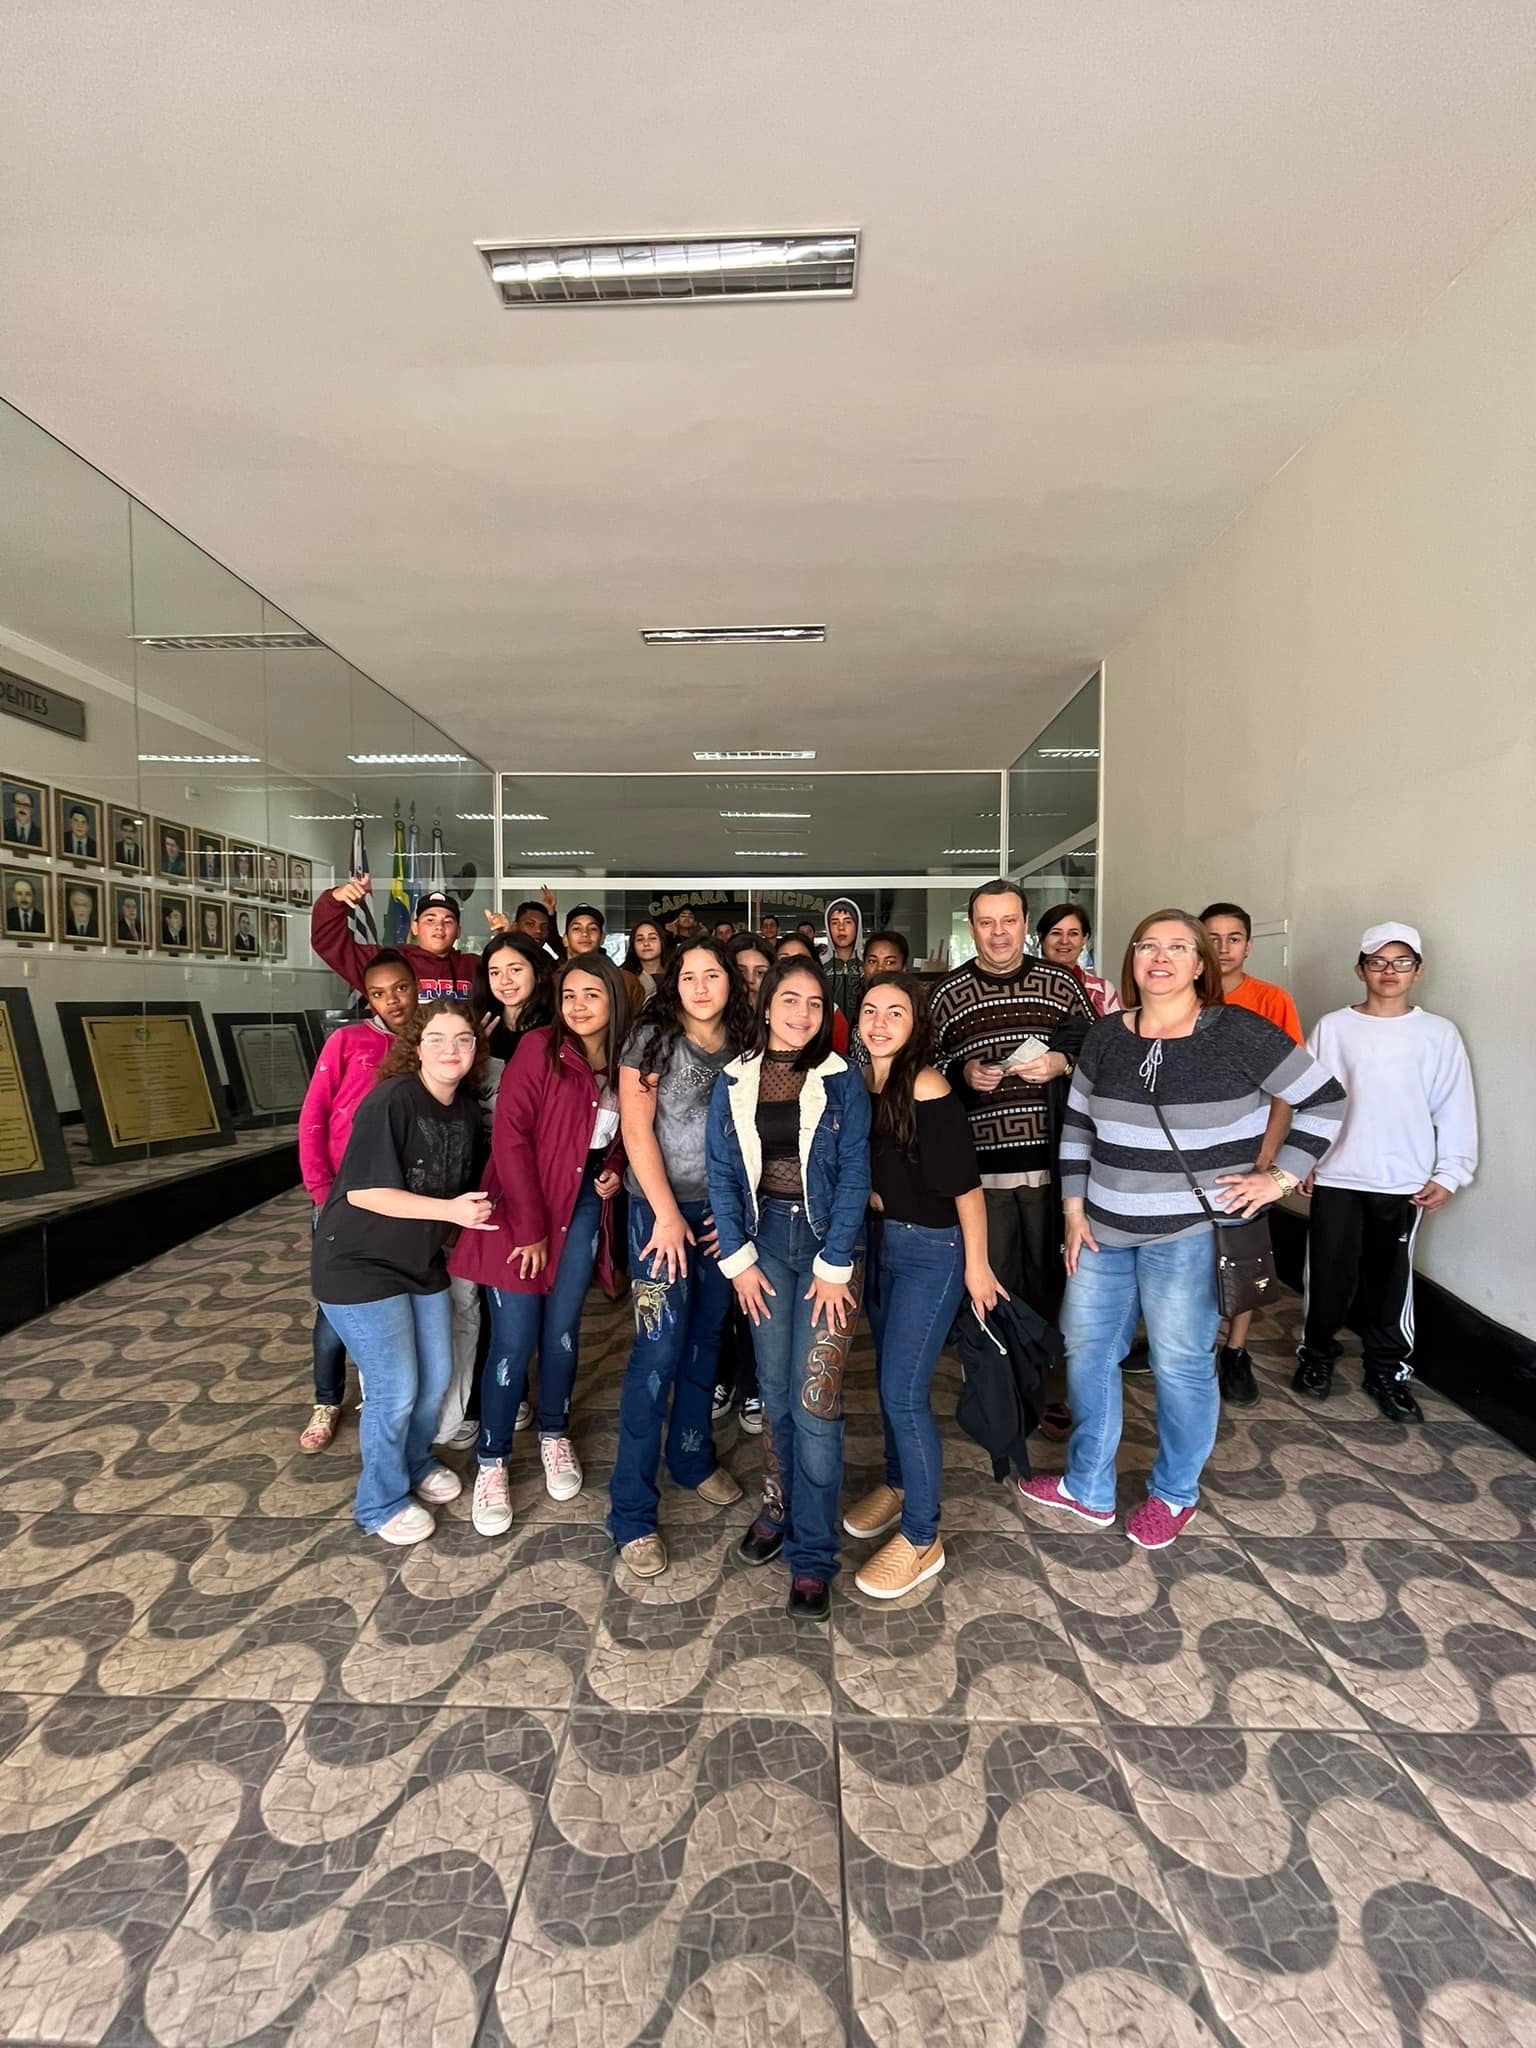 Recebemos hoje (19/09) na Câmara Municipal de Piracaia, os alunos da Escola Eurides Barari, para visitação da exposição dos quadros pintados pelo artista plástico Tazula.